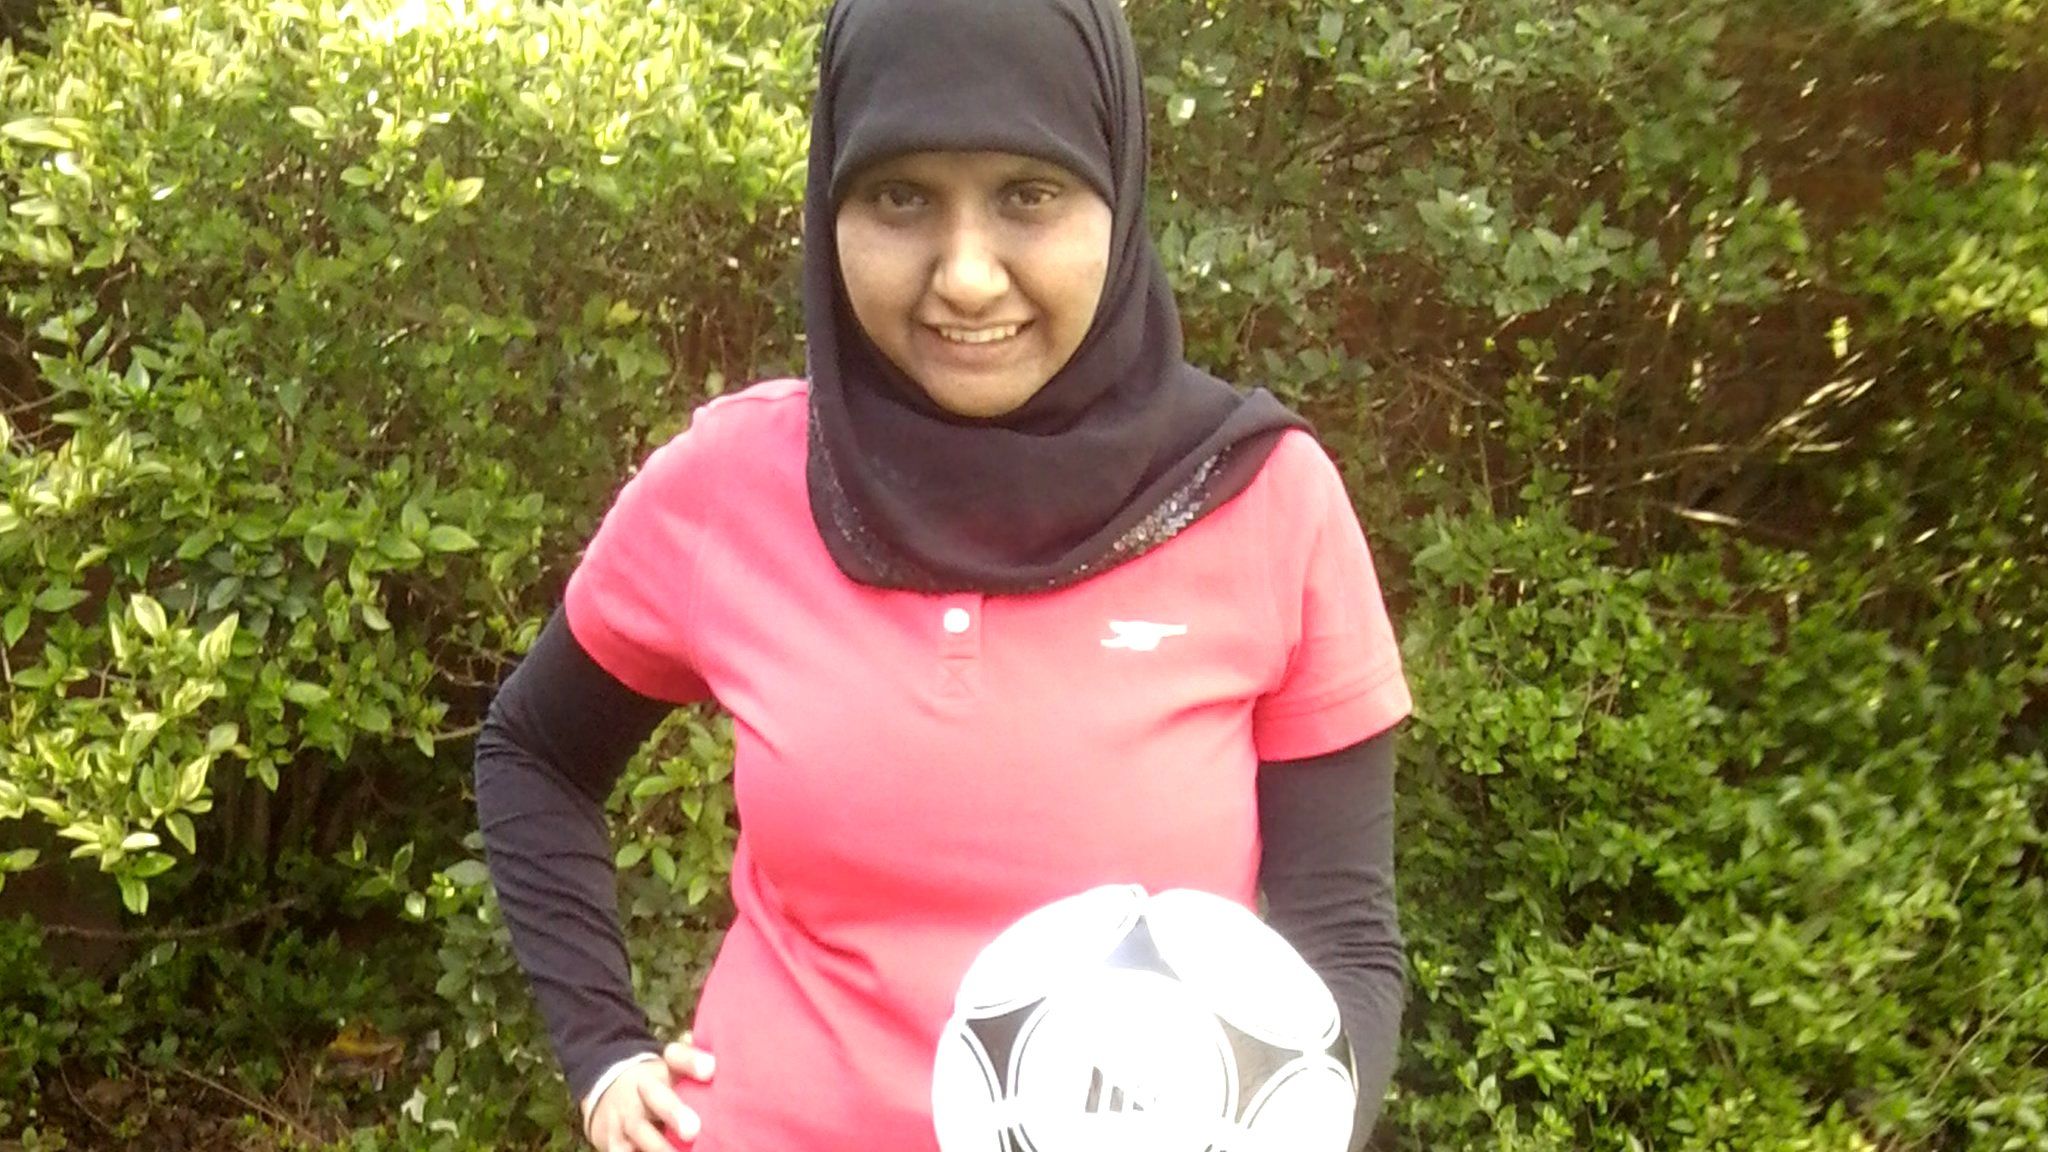 South Asian female football coach Annie Zaidi